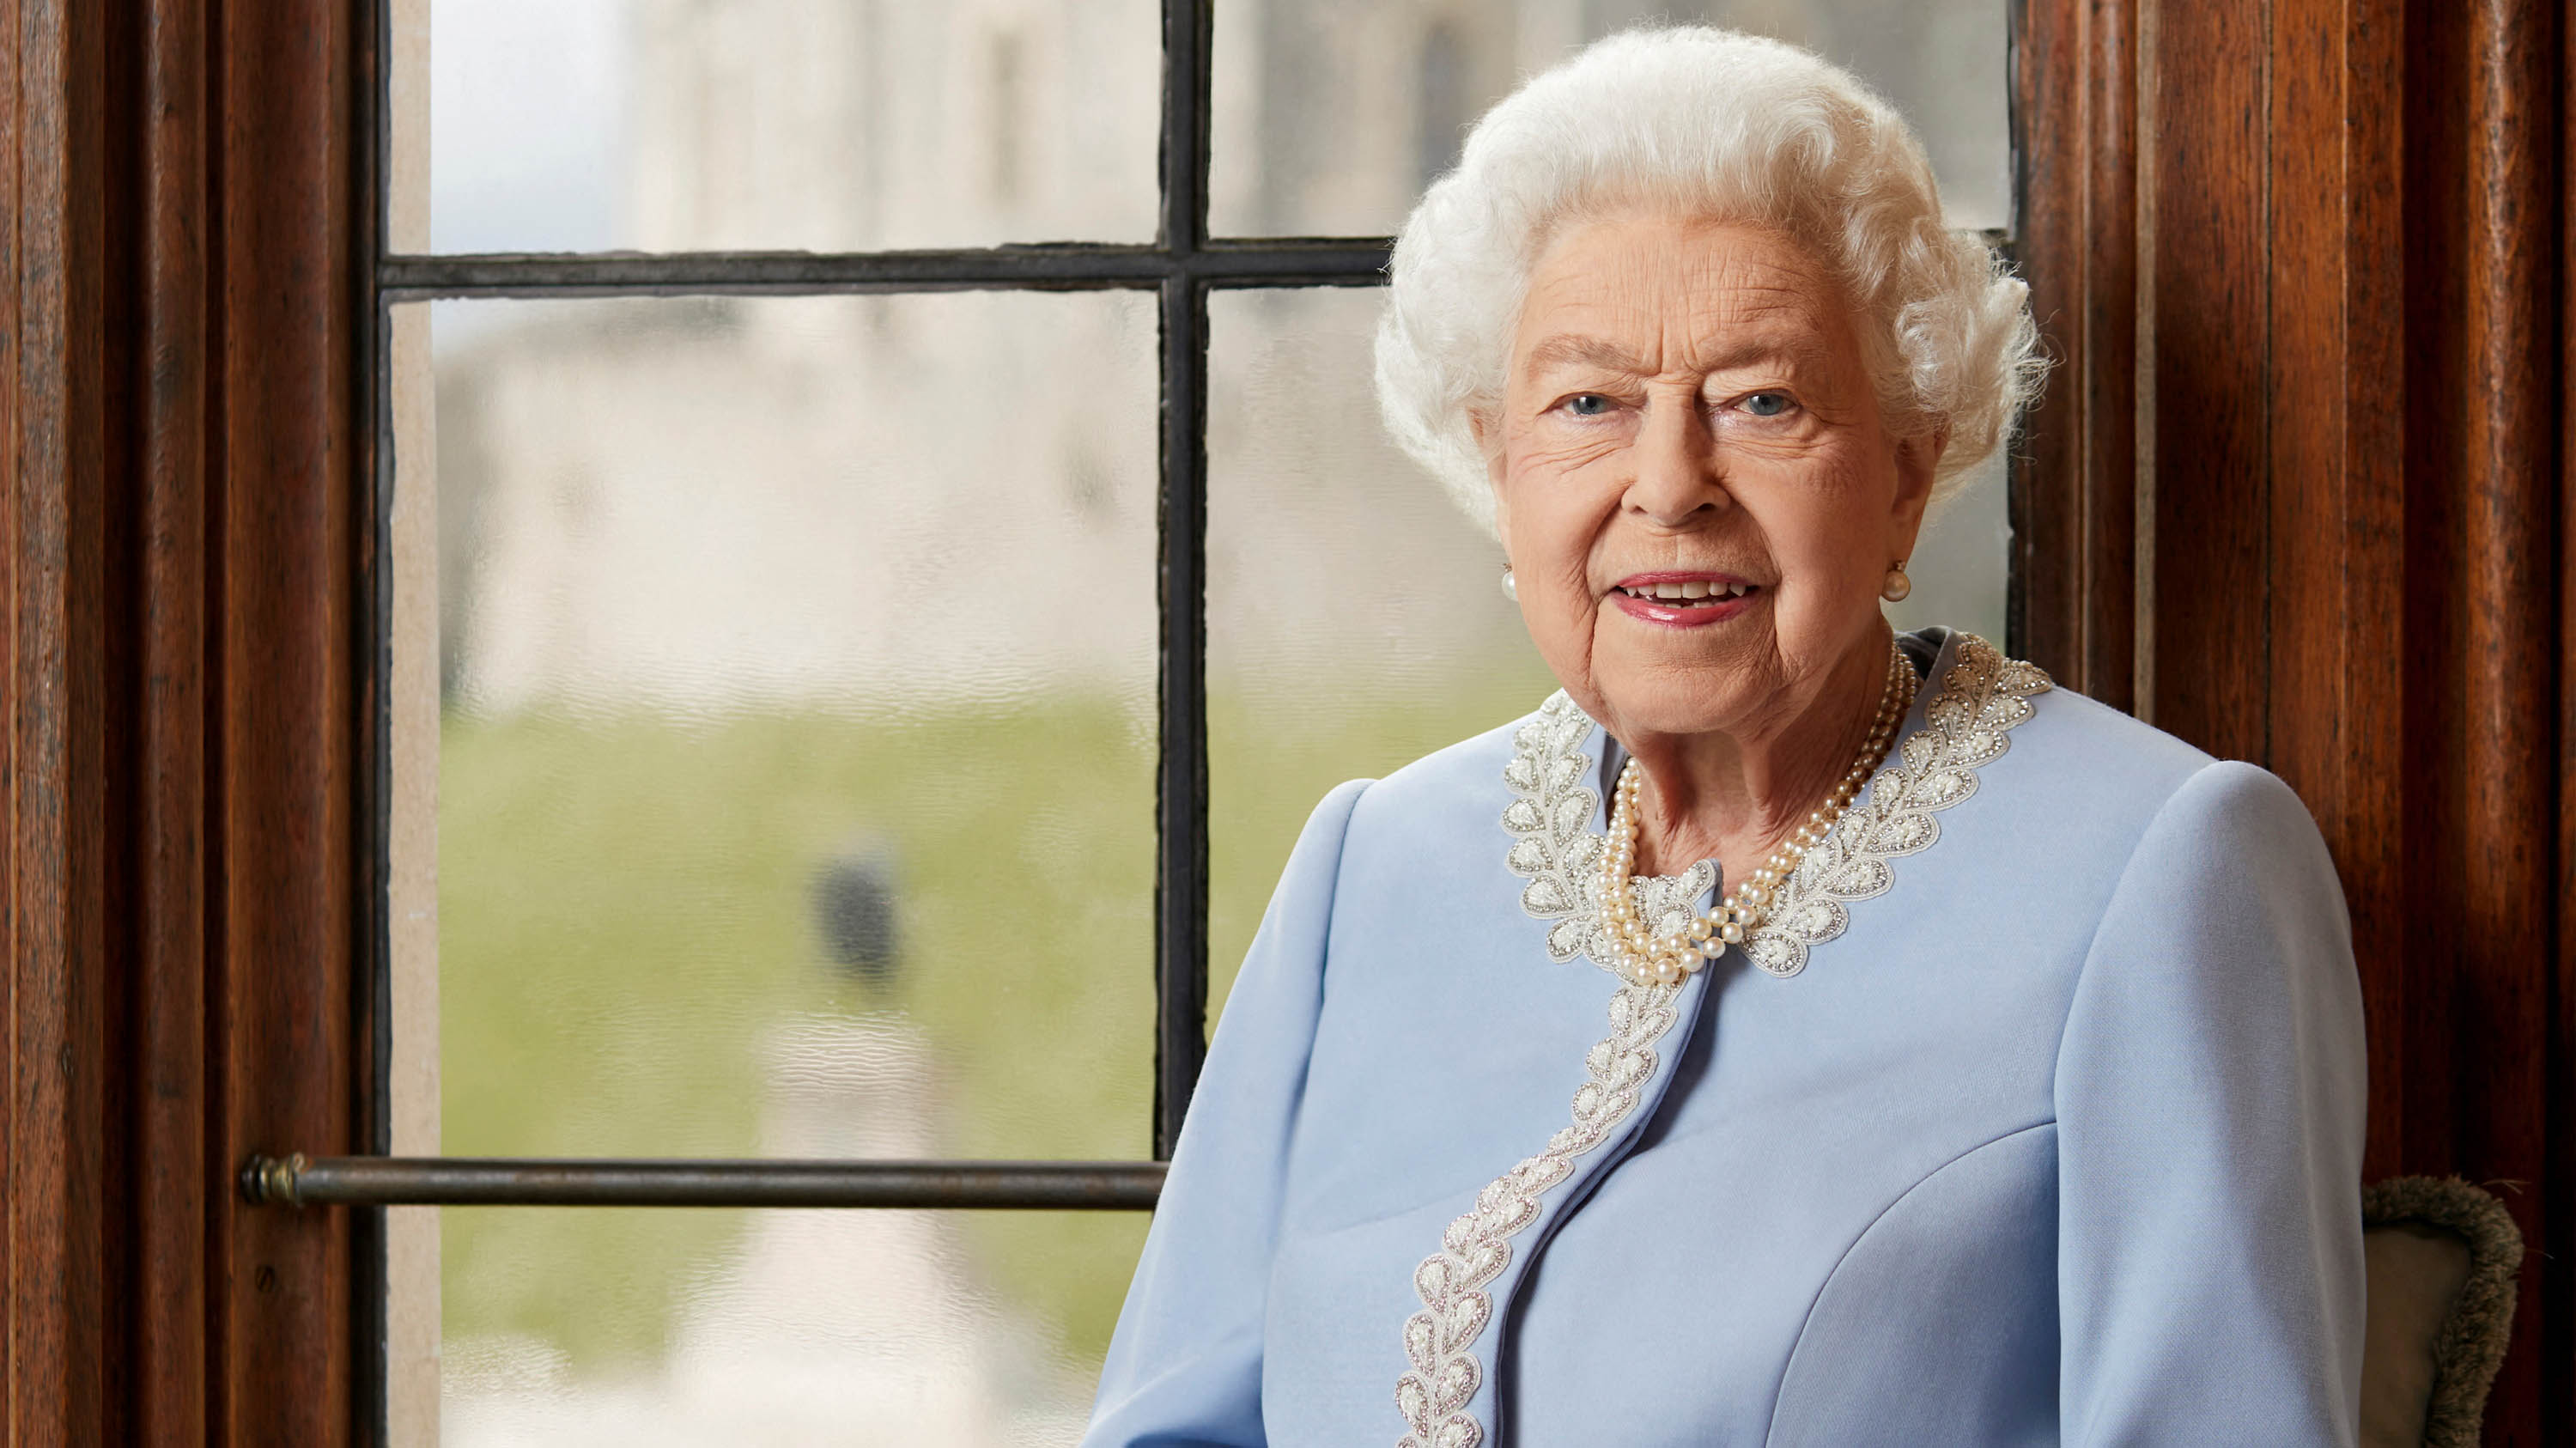 Este jueves 8 de septiembre, falleció la reina Isabel II / TPX IMAGES OF THE DAY     